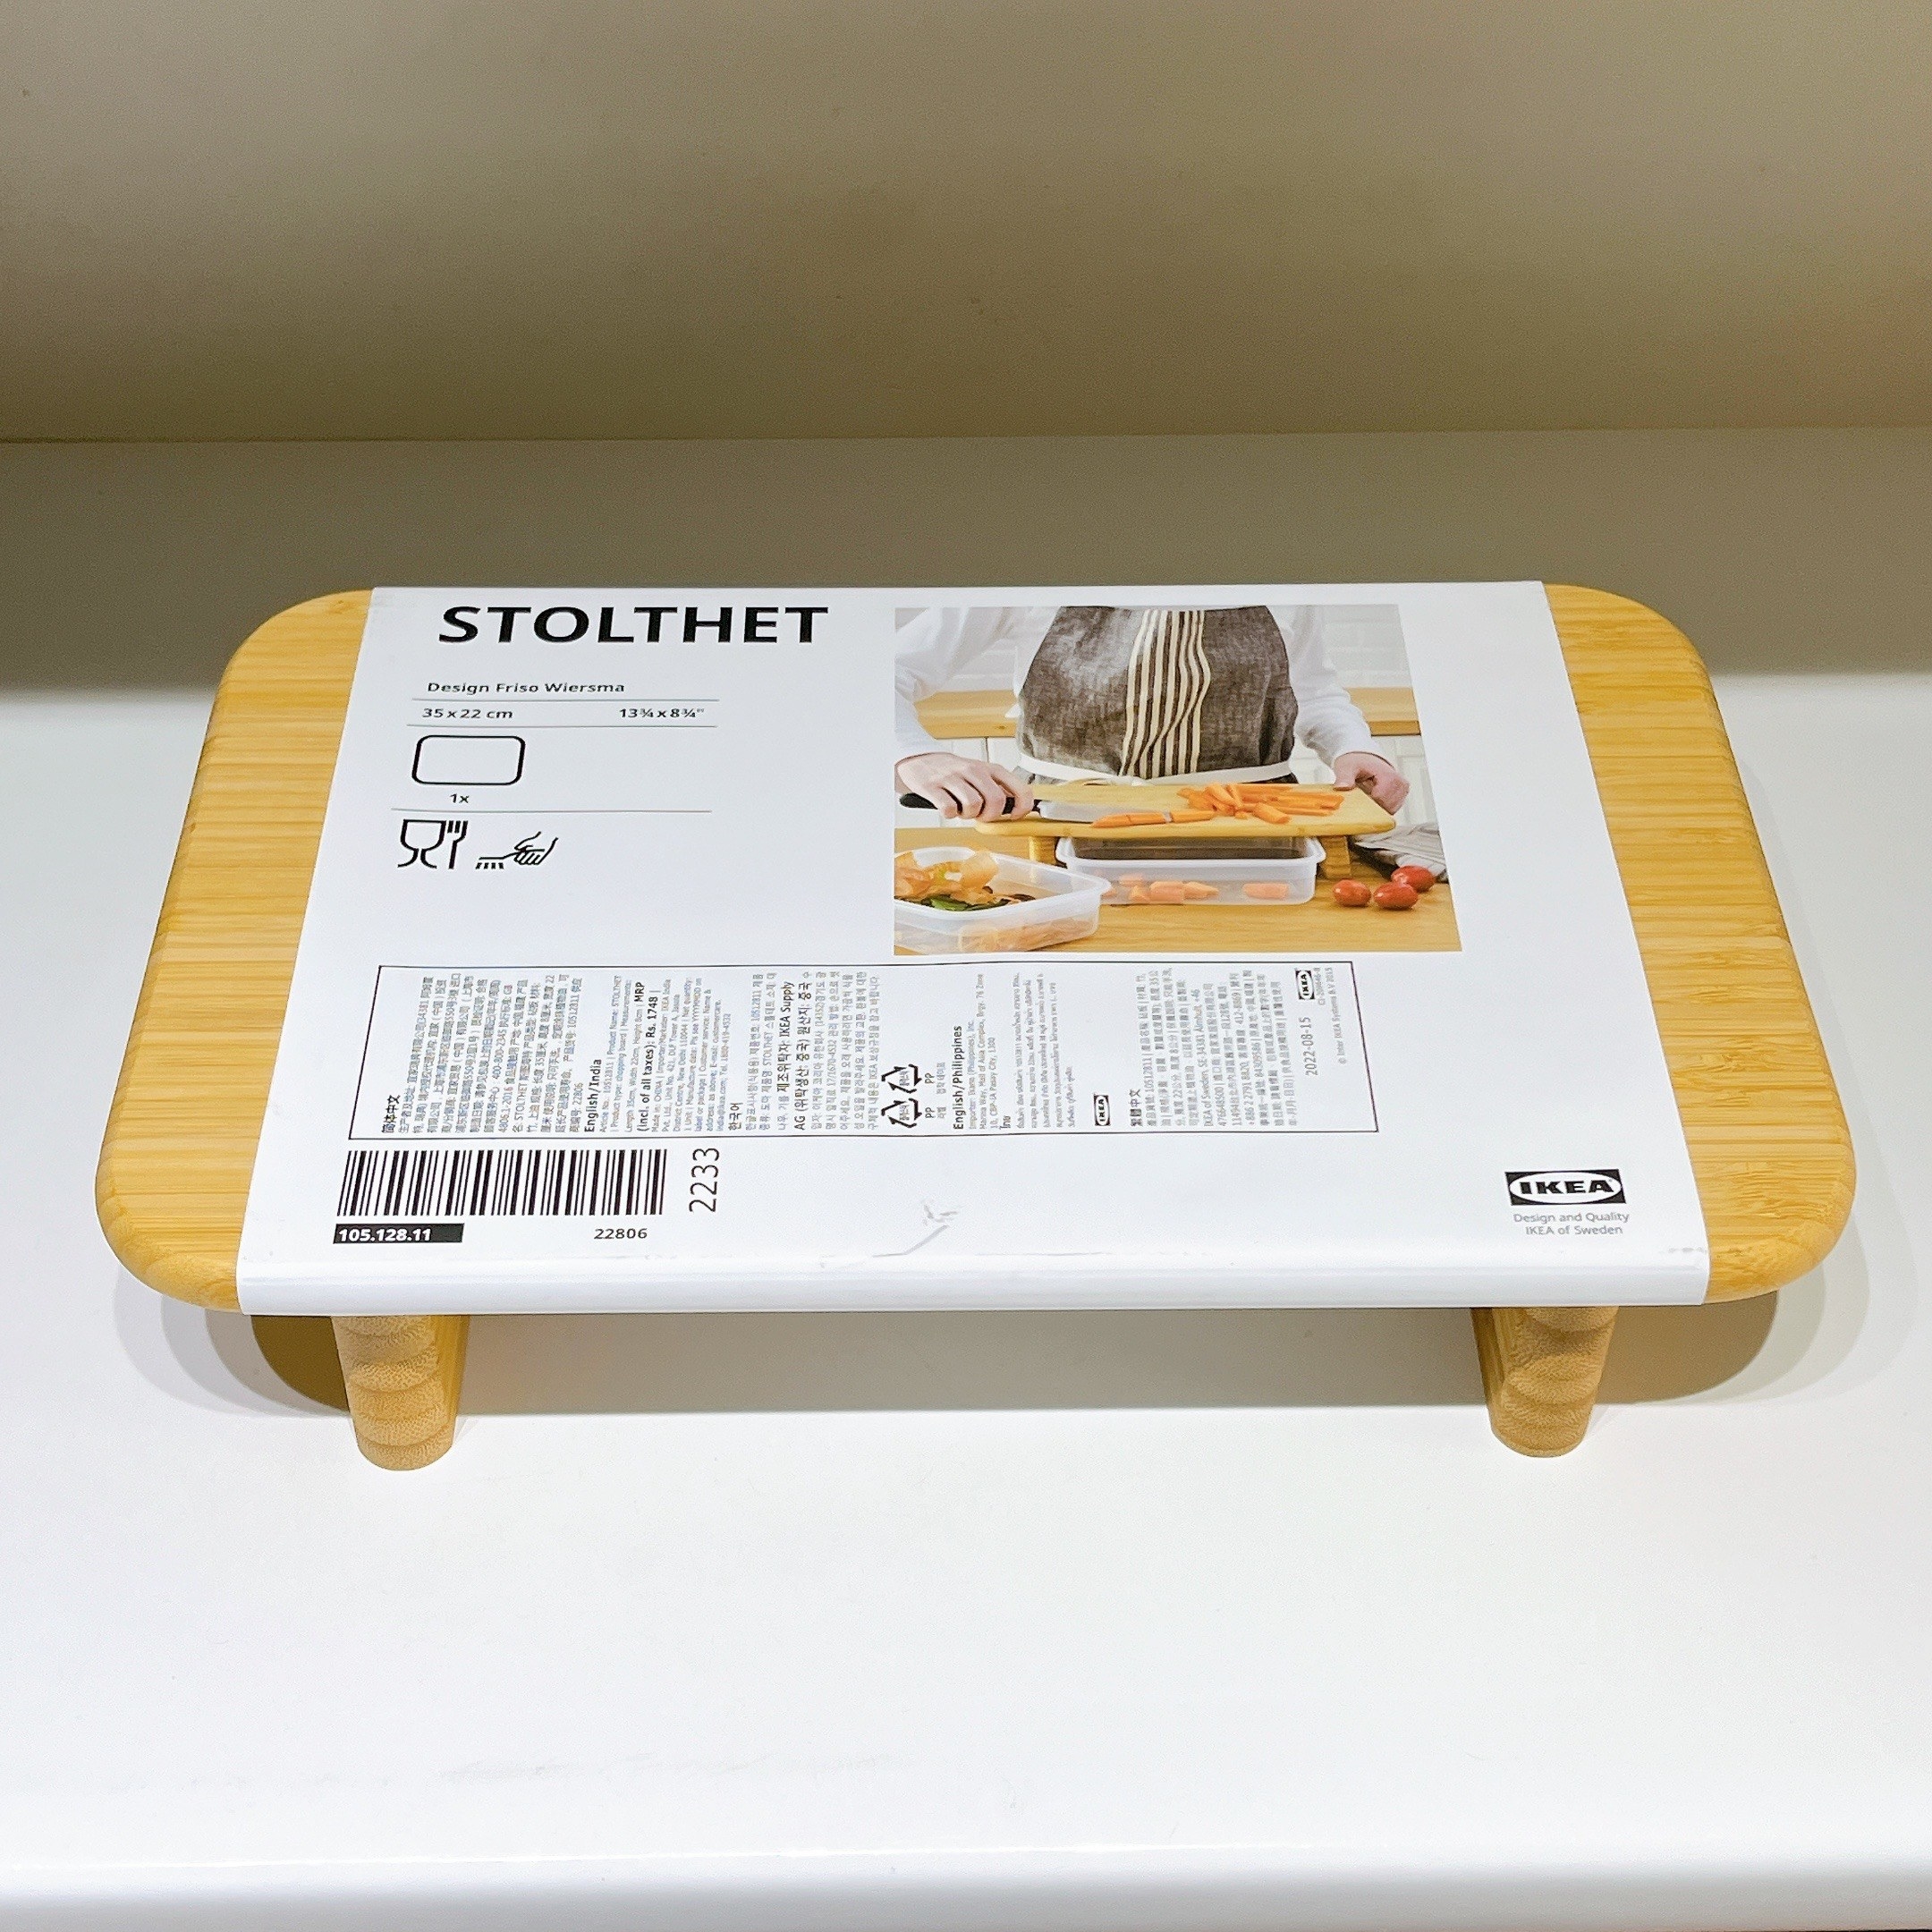 IKEA（イケア）のおすすめの便利グッズ「STOLTHET ストルトヘット」